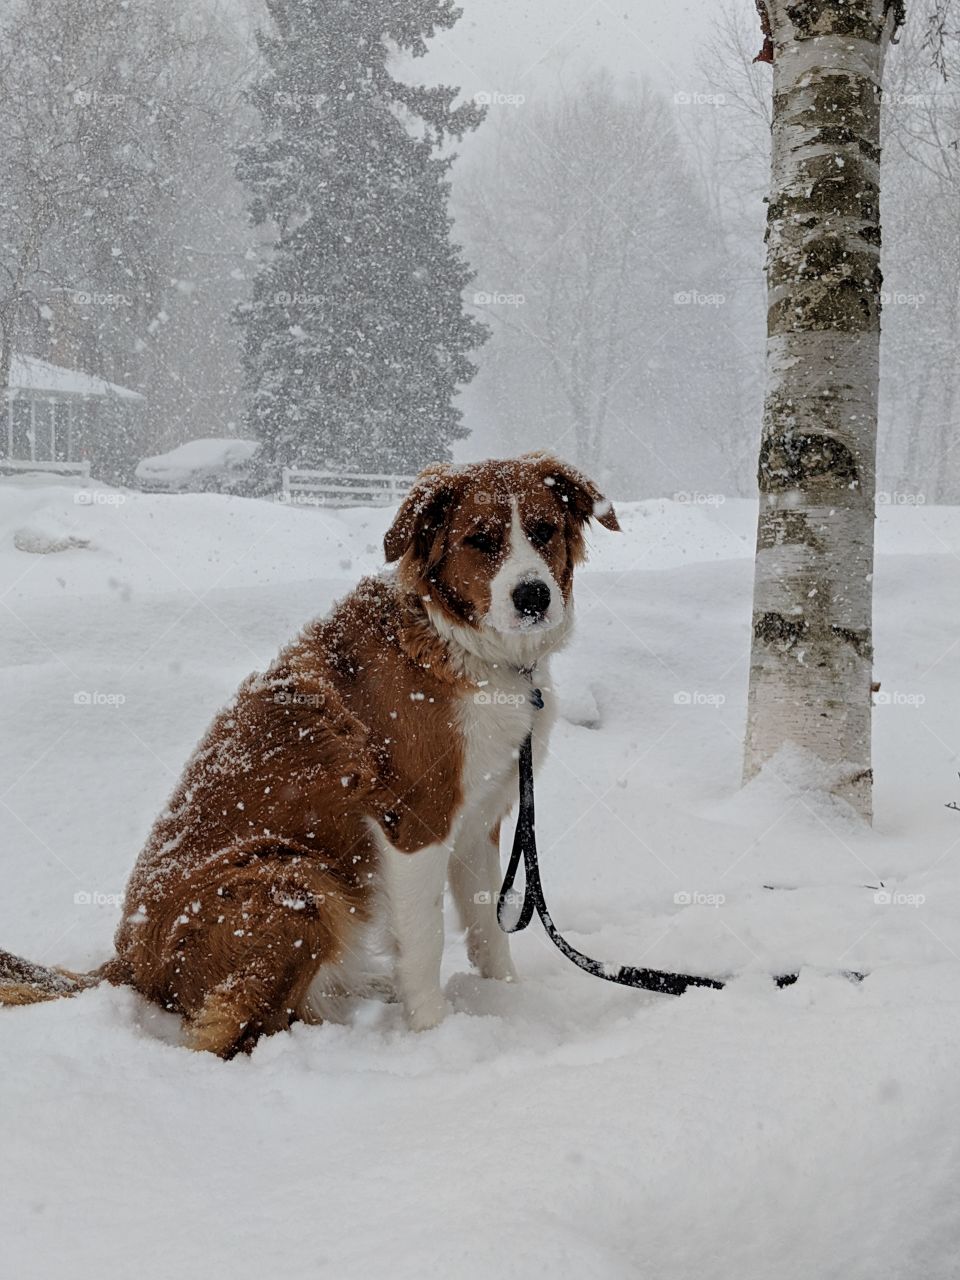 Dog in snowstorm, Toronto, Ontario